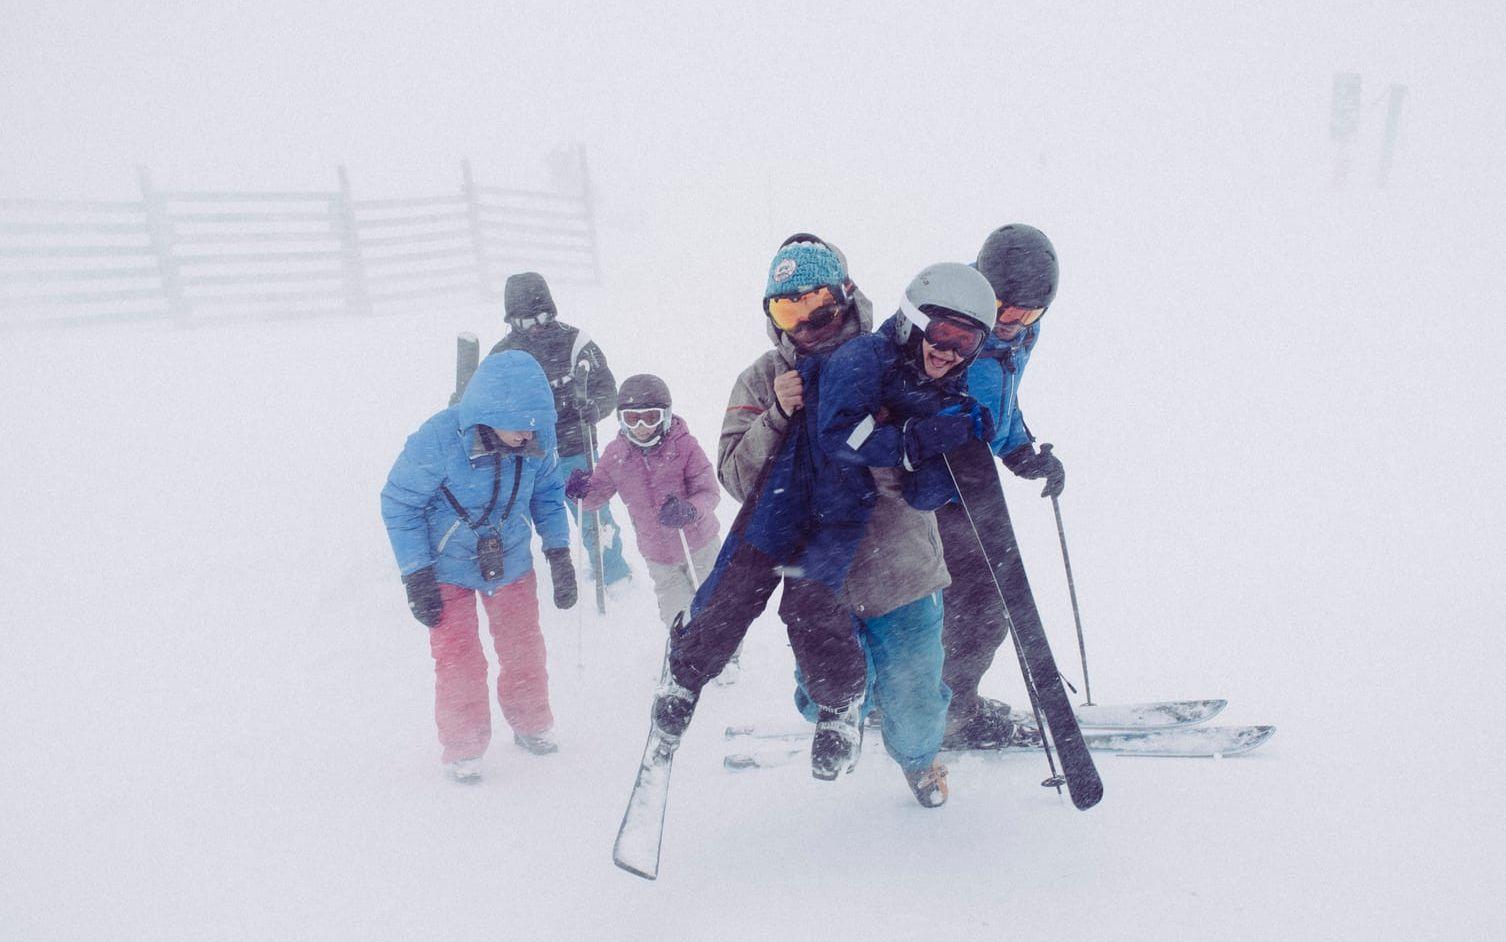 ”Här är en av filmarbetarna, en skidåkare från Les Arcs, som hette Baptiste. När vi skulle spela in den här scenen i snöstormen och dimman var det ganska tuffa förhållanden. Starka skidåkare – runners som det kallas på filmspråk – som Baptiste fick hjälpa barnen att bära deras grejer och sånt.” 